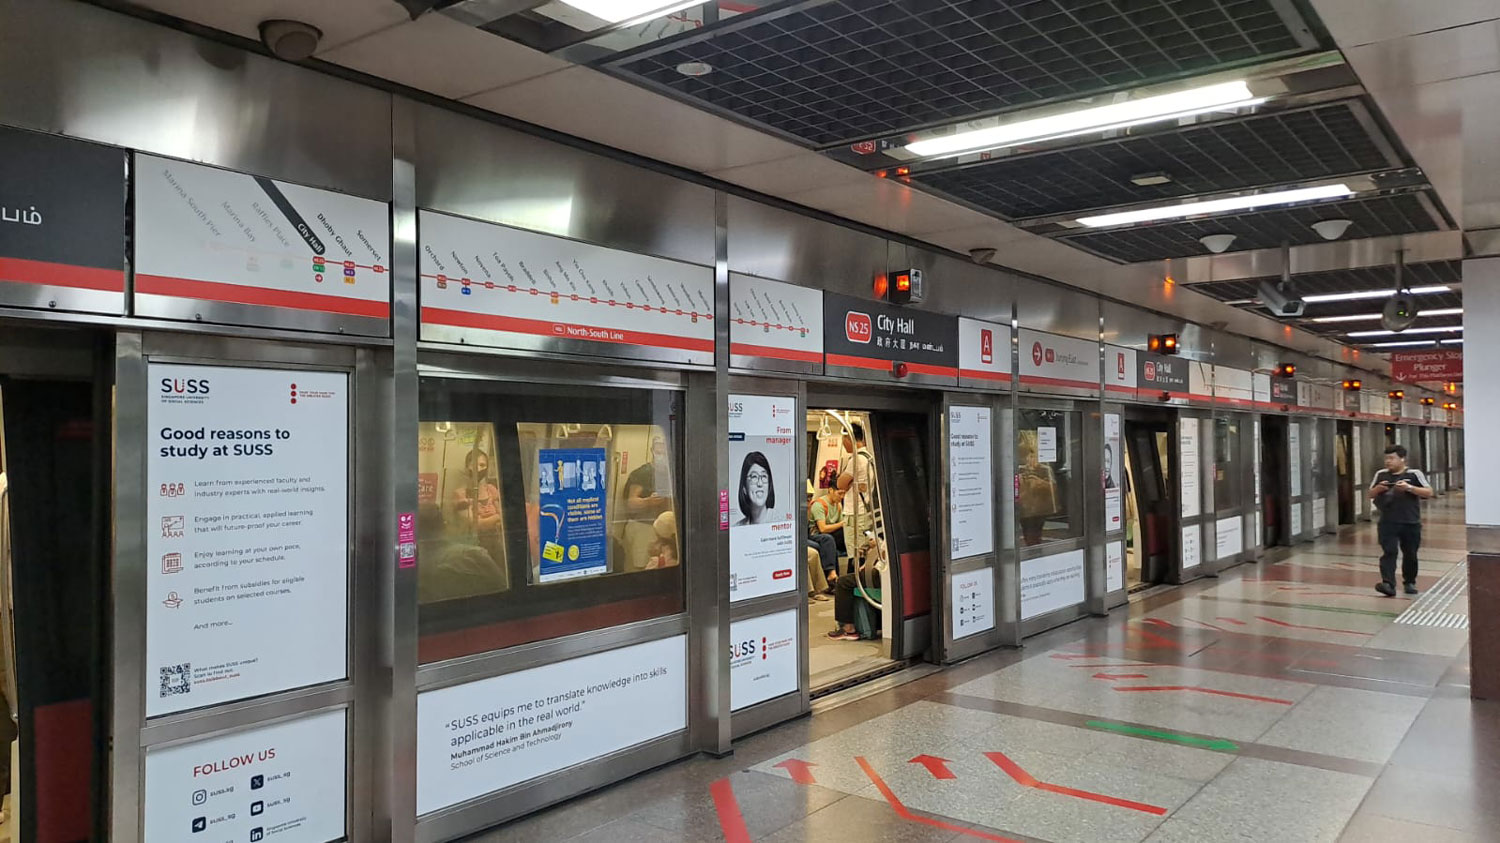 Die MTR von HK hat eine bedeutende Rolle bei der Infrastrukturentwicklung dieser Smart City gespielt.